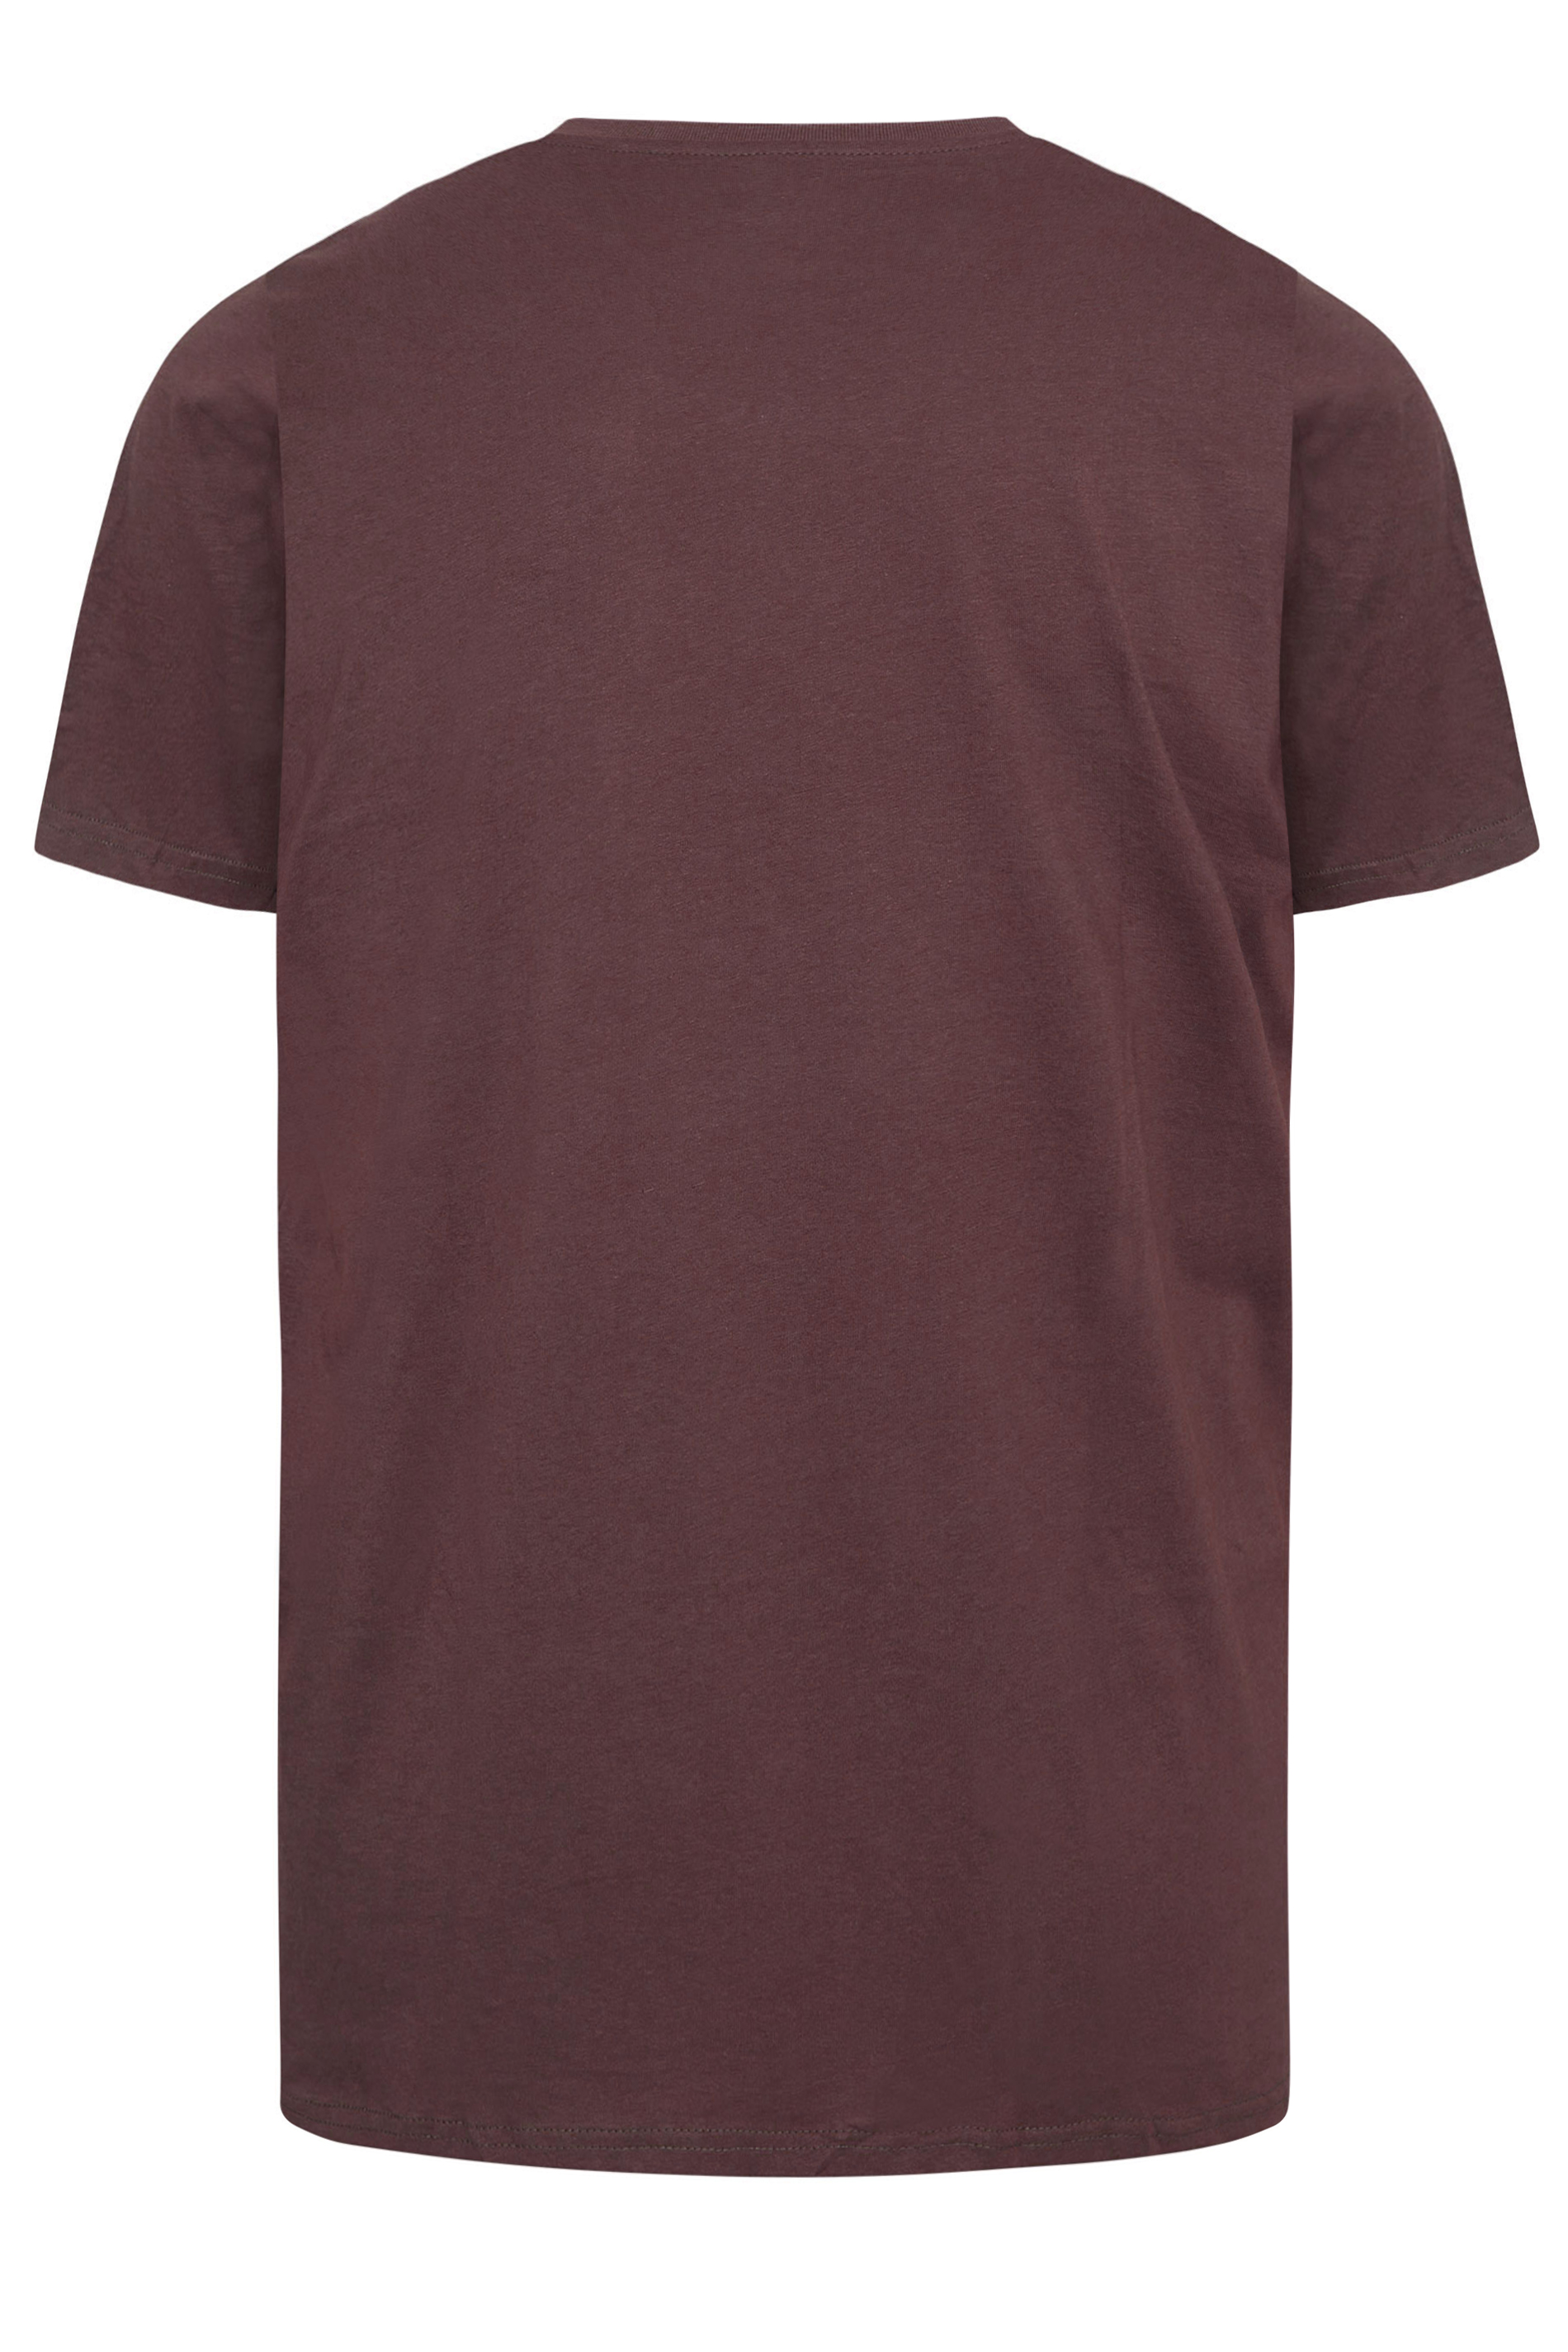 BadRhino Burgundy Red Core T-Shirt | BadRhino 3